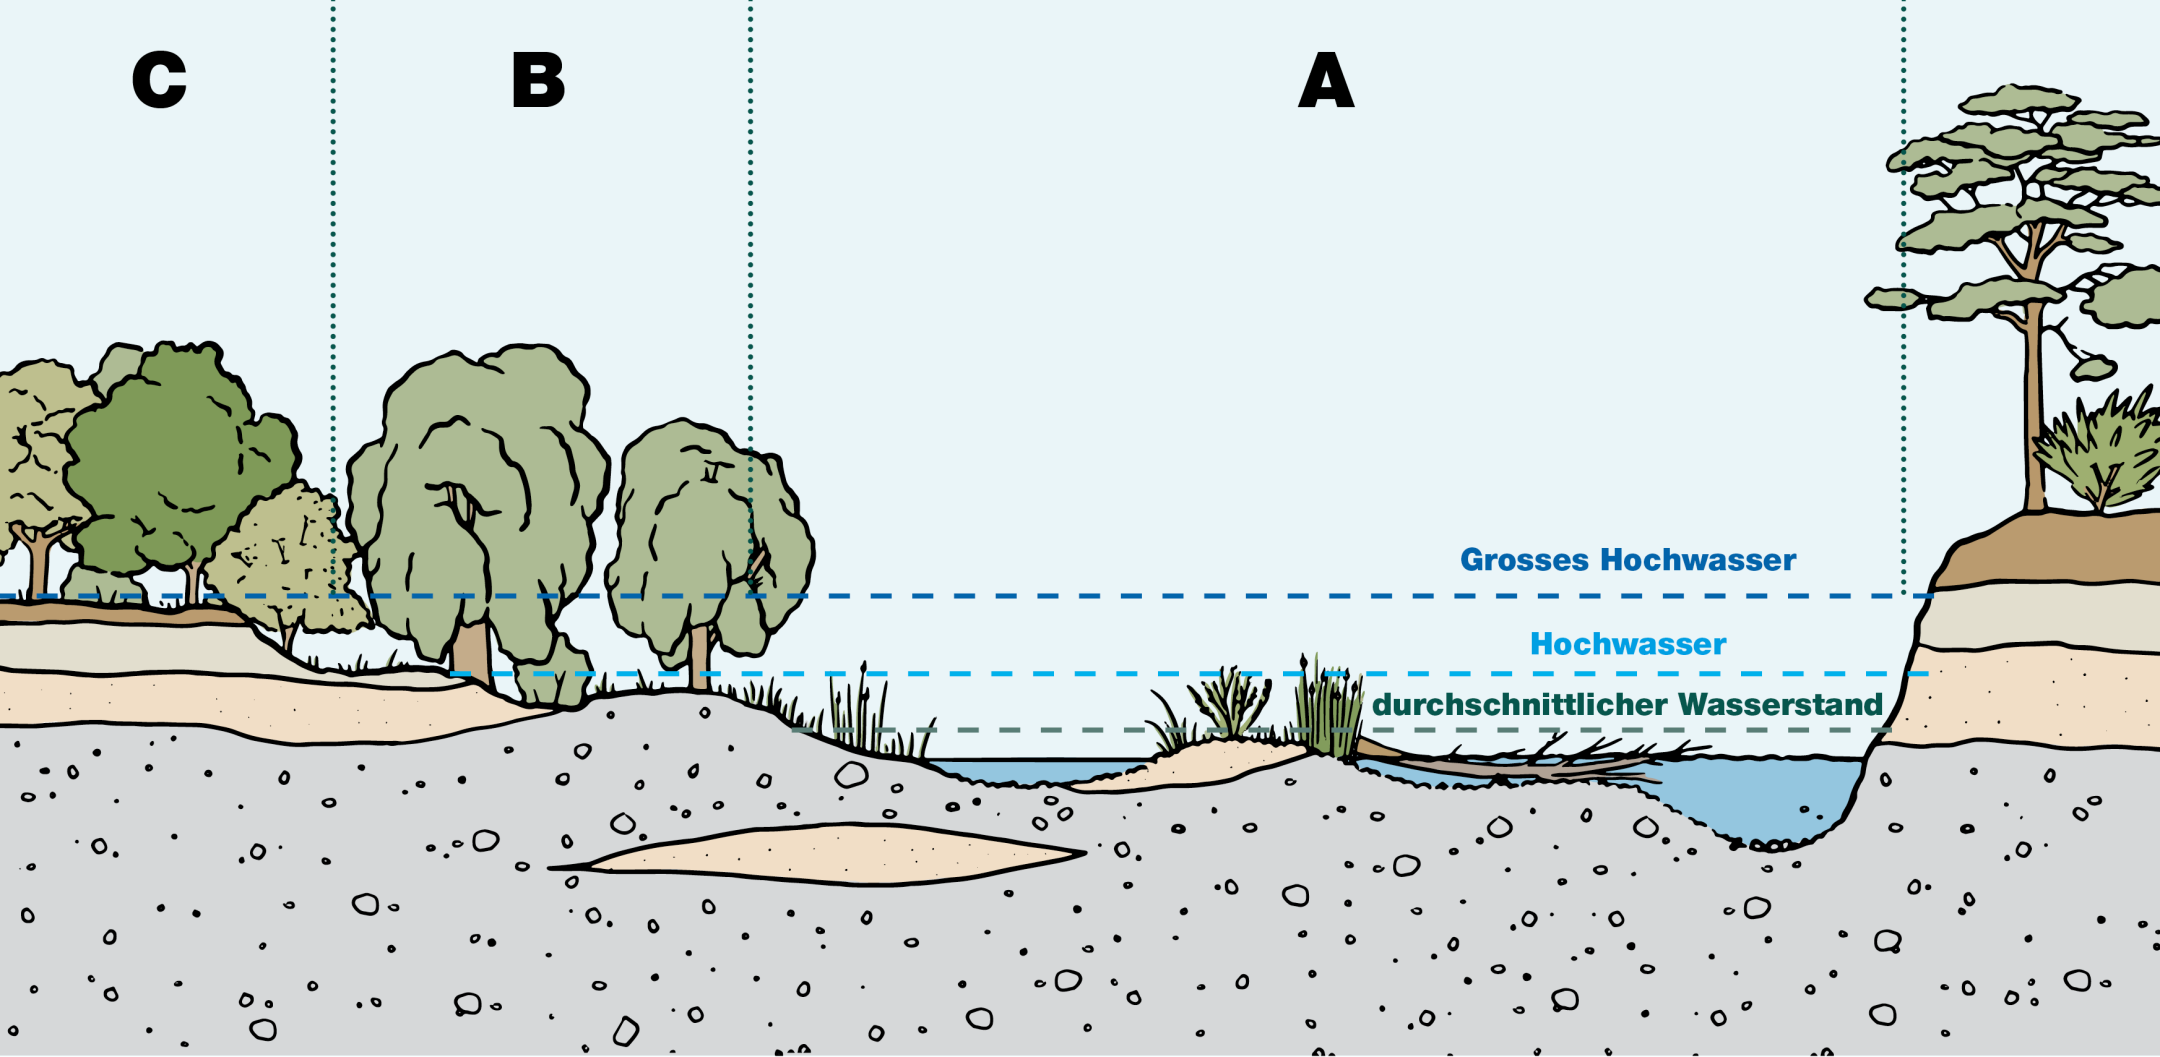 Querschnitt einer Aue mit ihren drei verschiedenen Bereichen: Das Flussbett, die Weichholzaue und die Hartholzaue